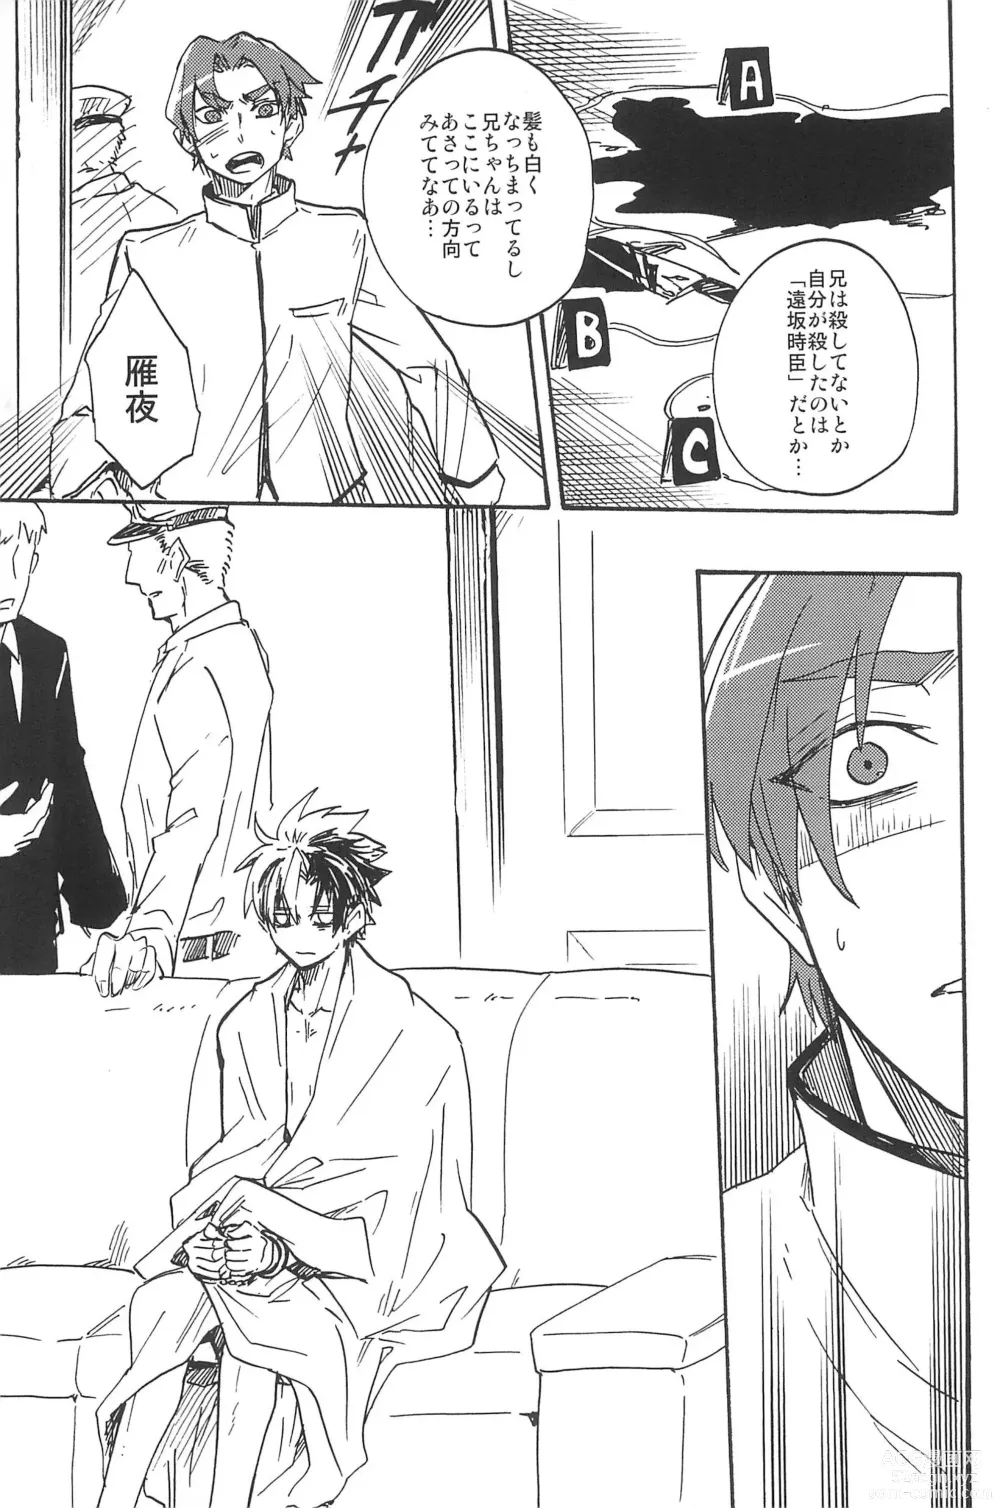 Page 319 of doujinshi RE:BERSERK